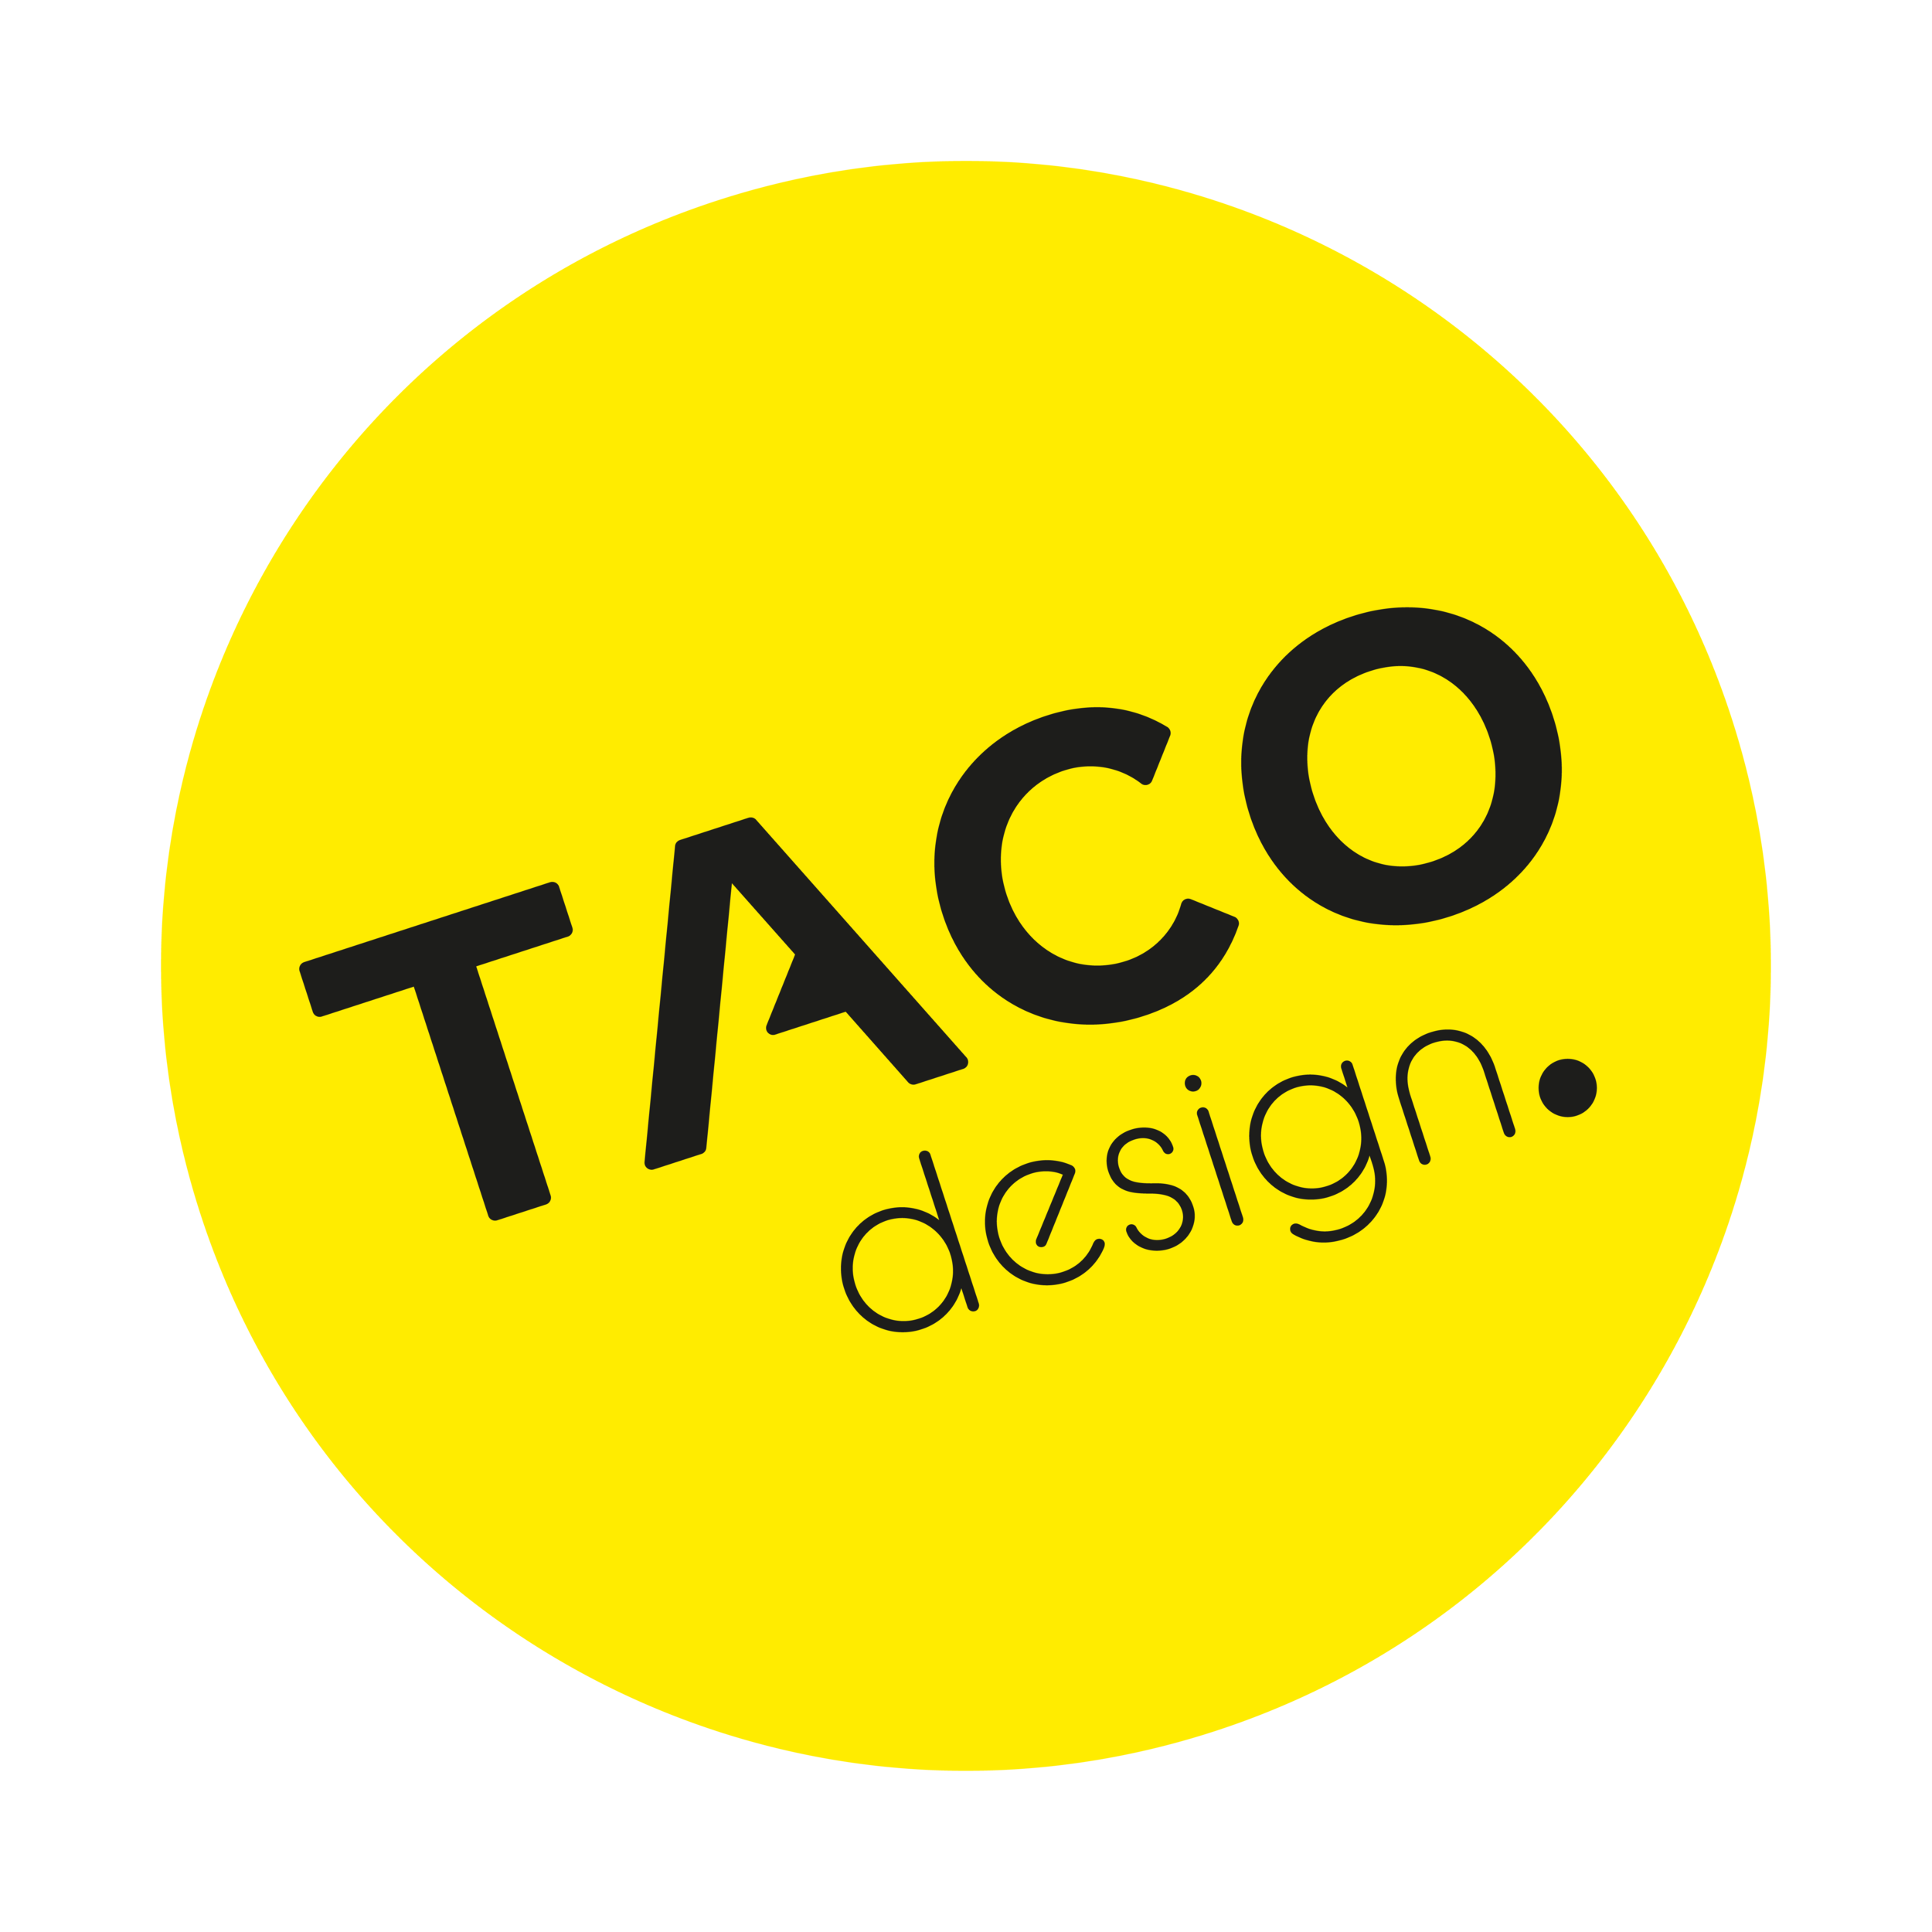 TACO Design